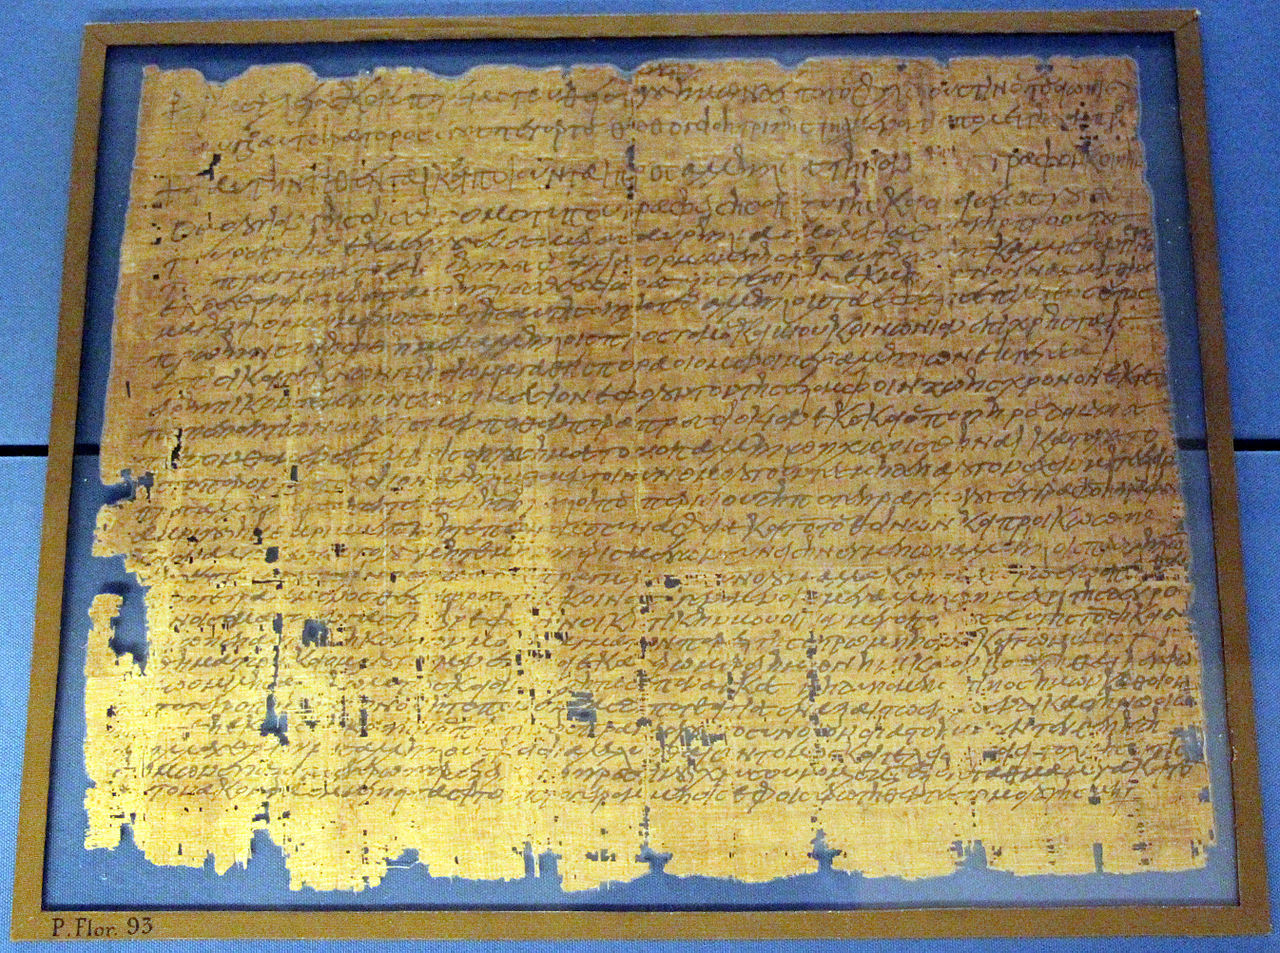 Новое исследование выявило удивительные характеристики папирусов эллинистической эпохи